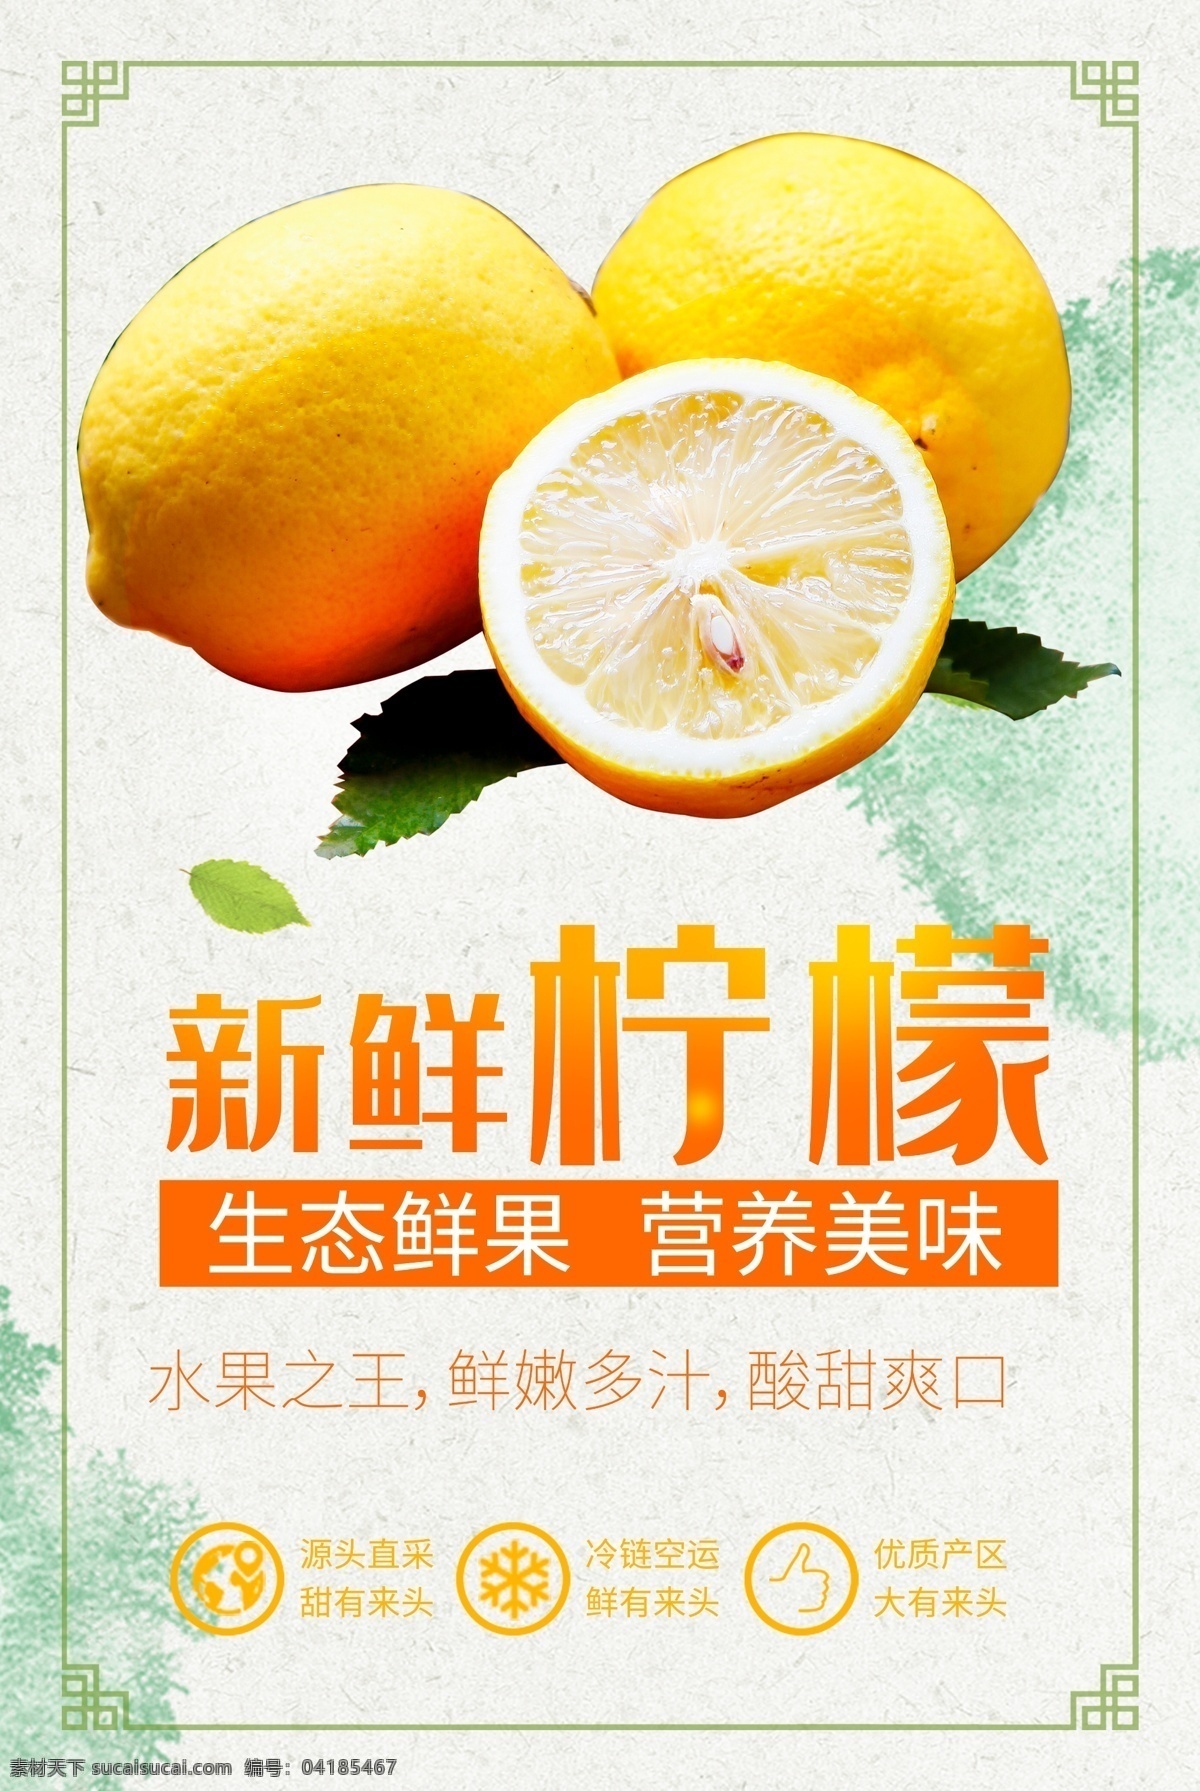 新鲜 柠檬 水果 促销 海报 水果海报 简约海报 小清新海报 食品海报 促销海报